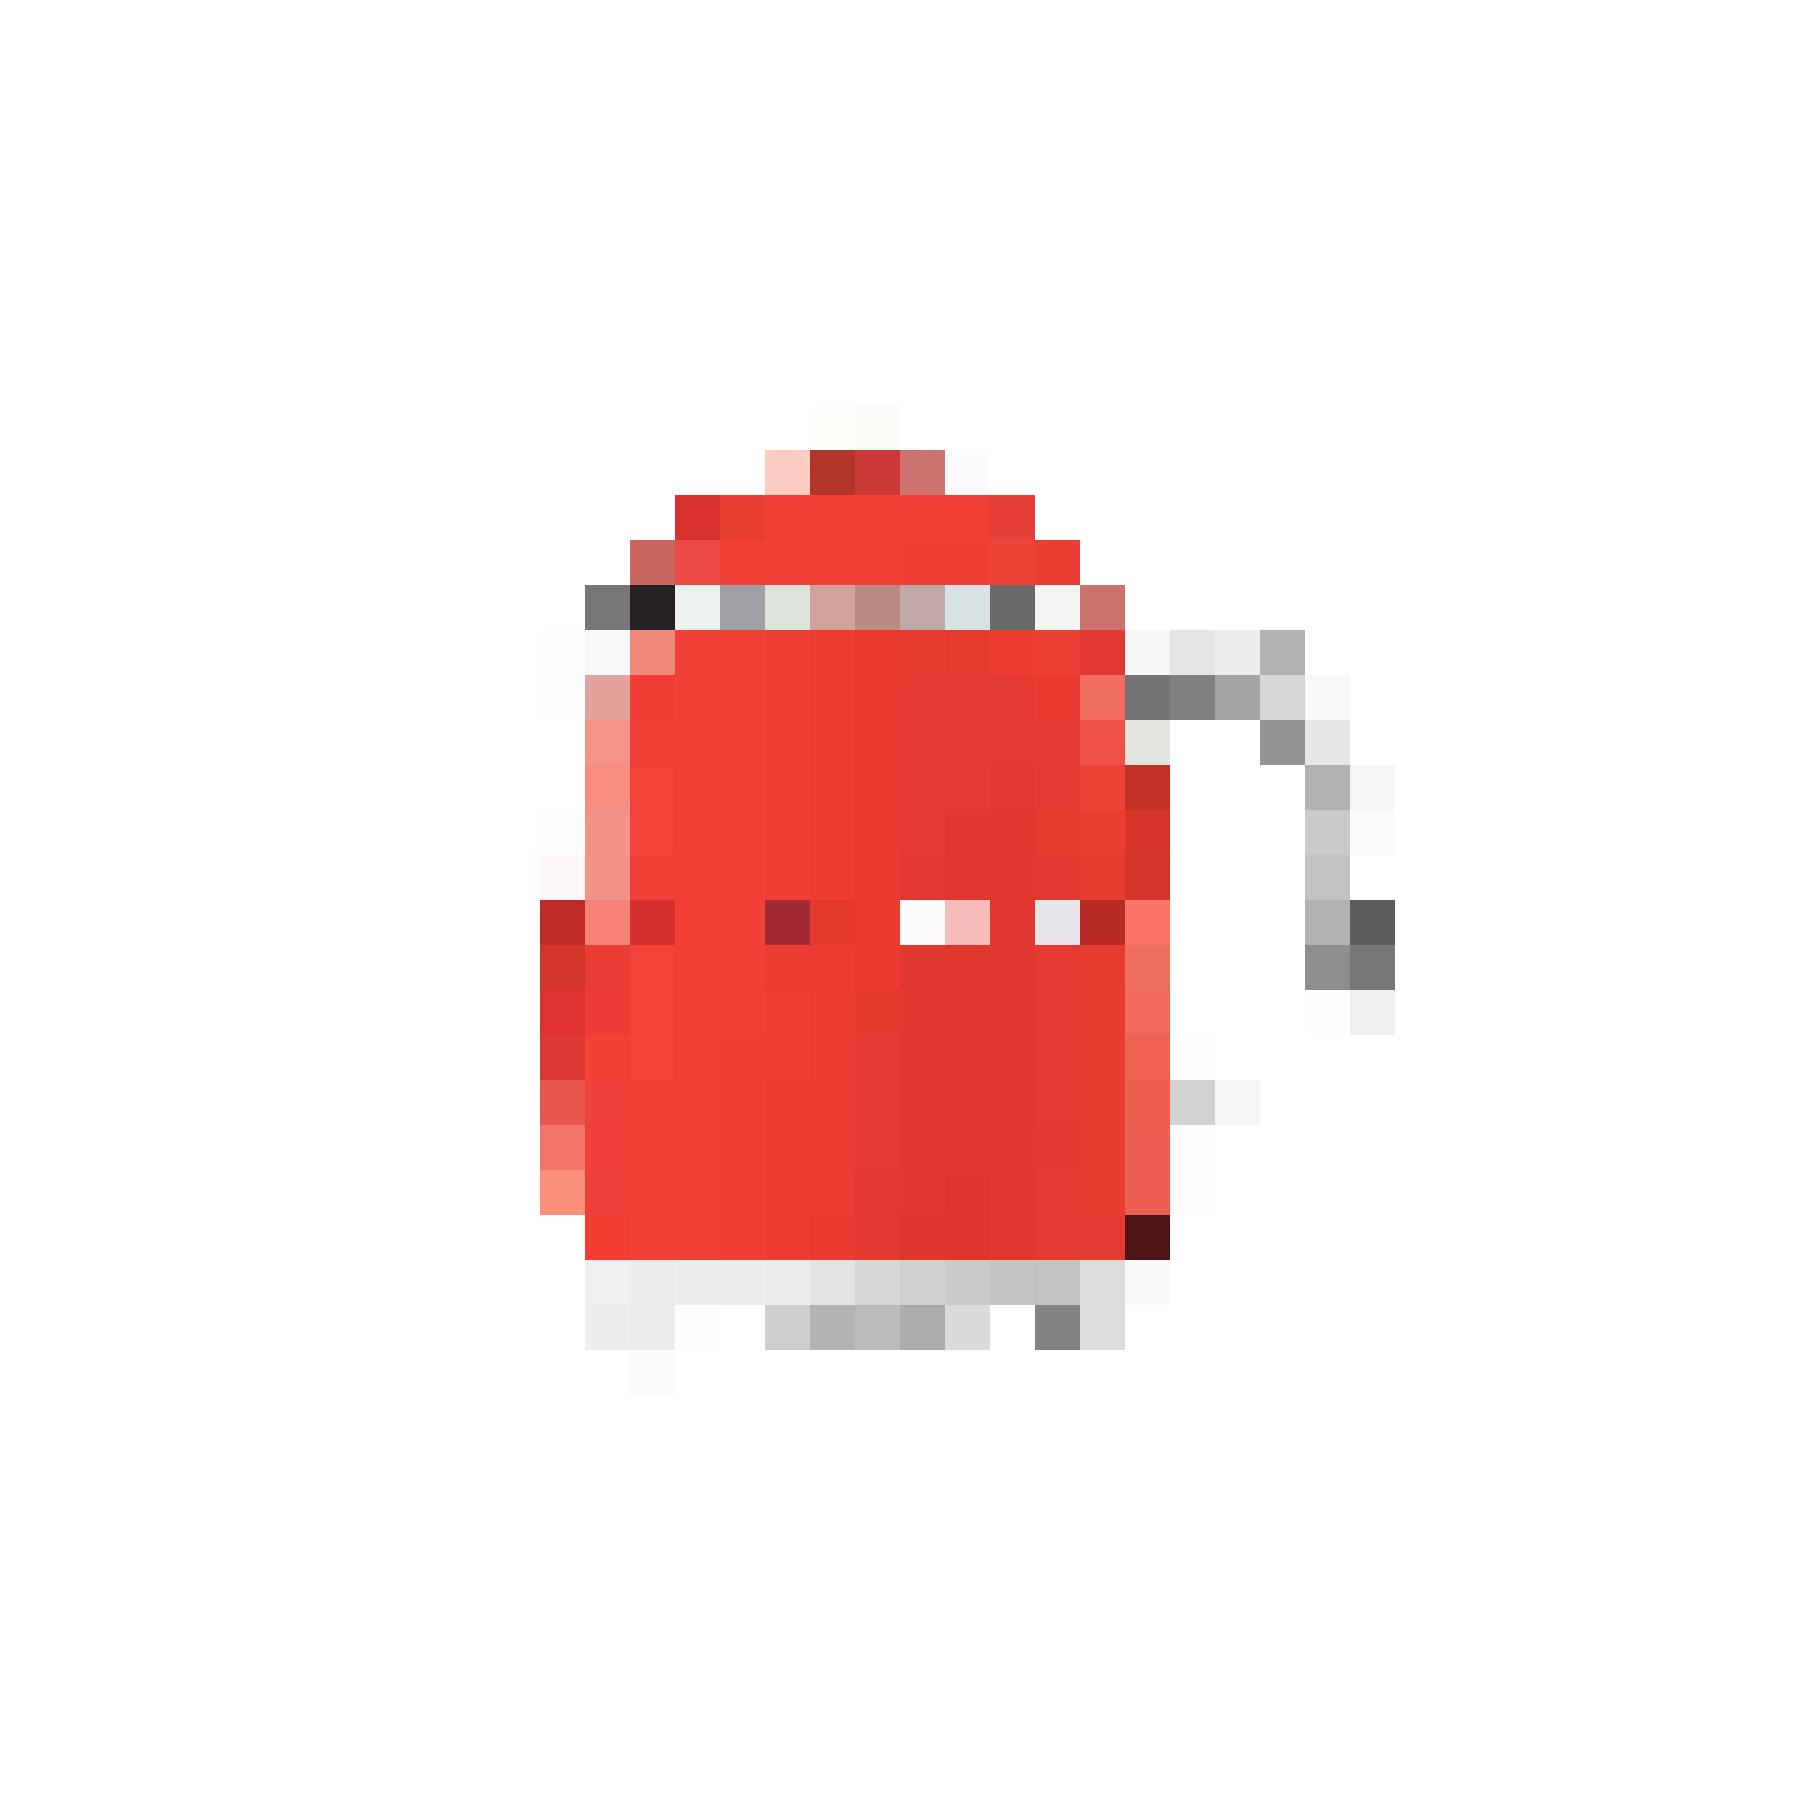 Mini bollitore rosso: Smeg 50’s Retro Style, fr. 119.–, su nettoshop.ch.